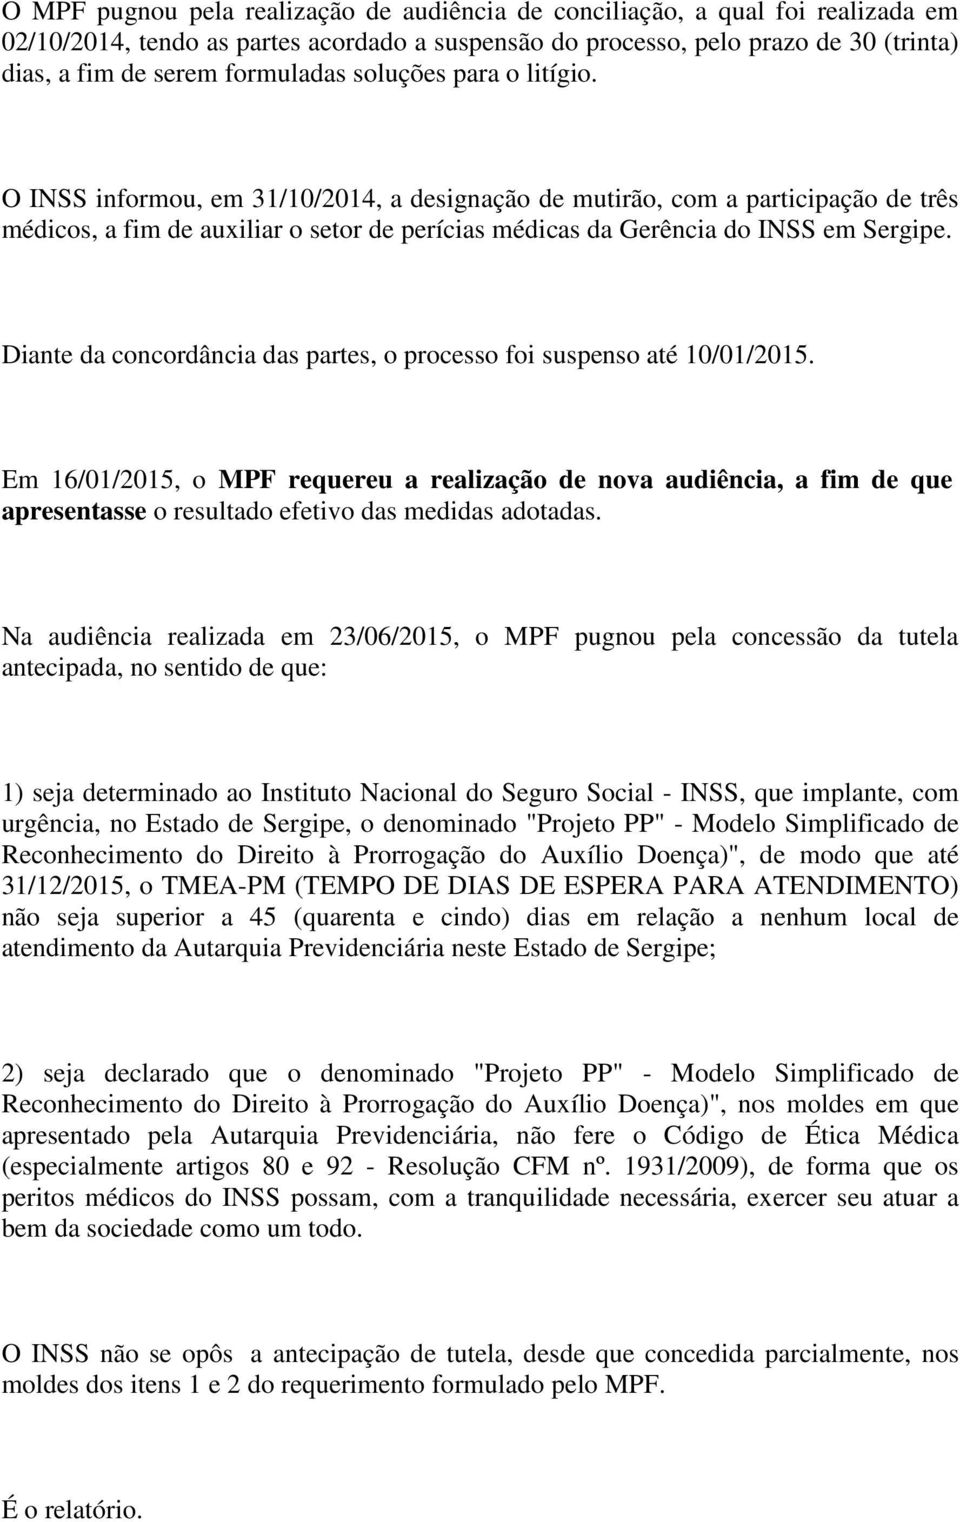 O INSS informou, em 31/10/2014, a designação de mutirão, com a participação de três médicos, a fim de auxiliar o setor de perícias médicas da Gerência do INSS em Sergipe.